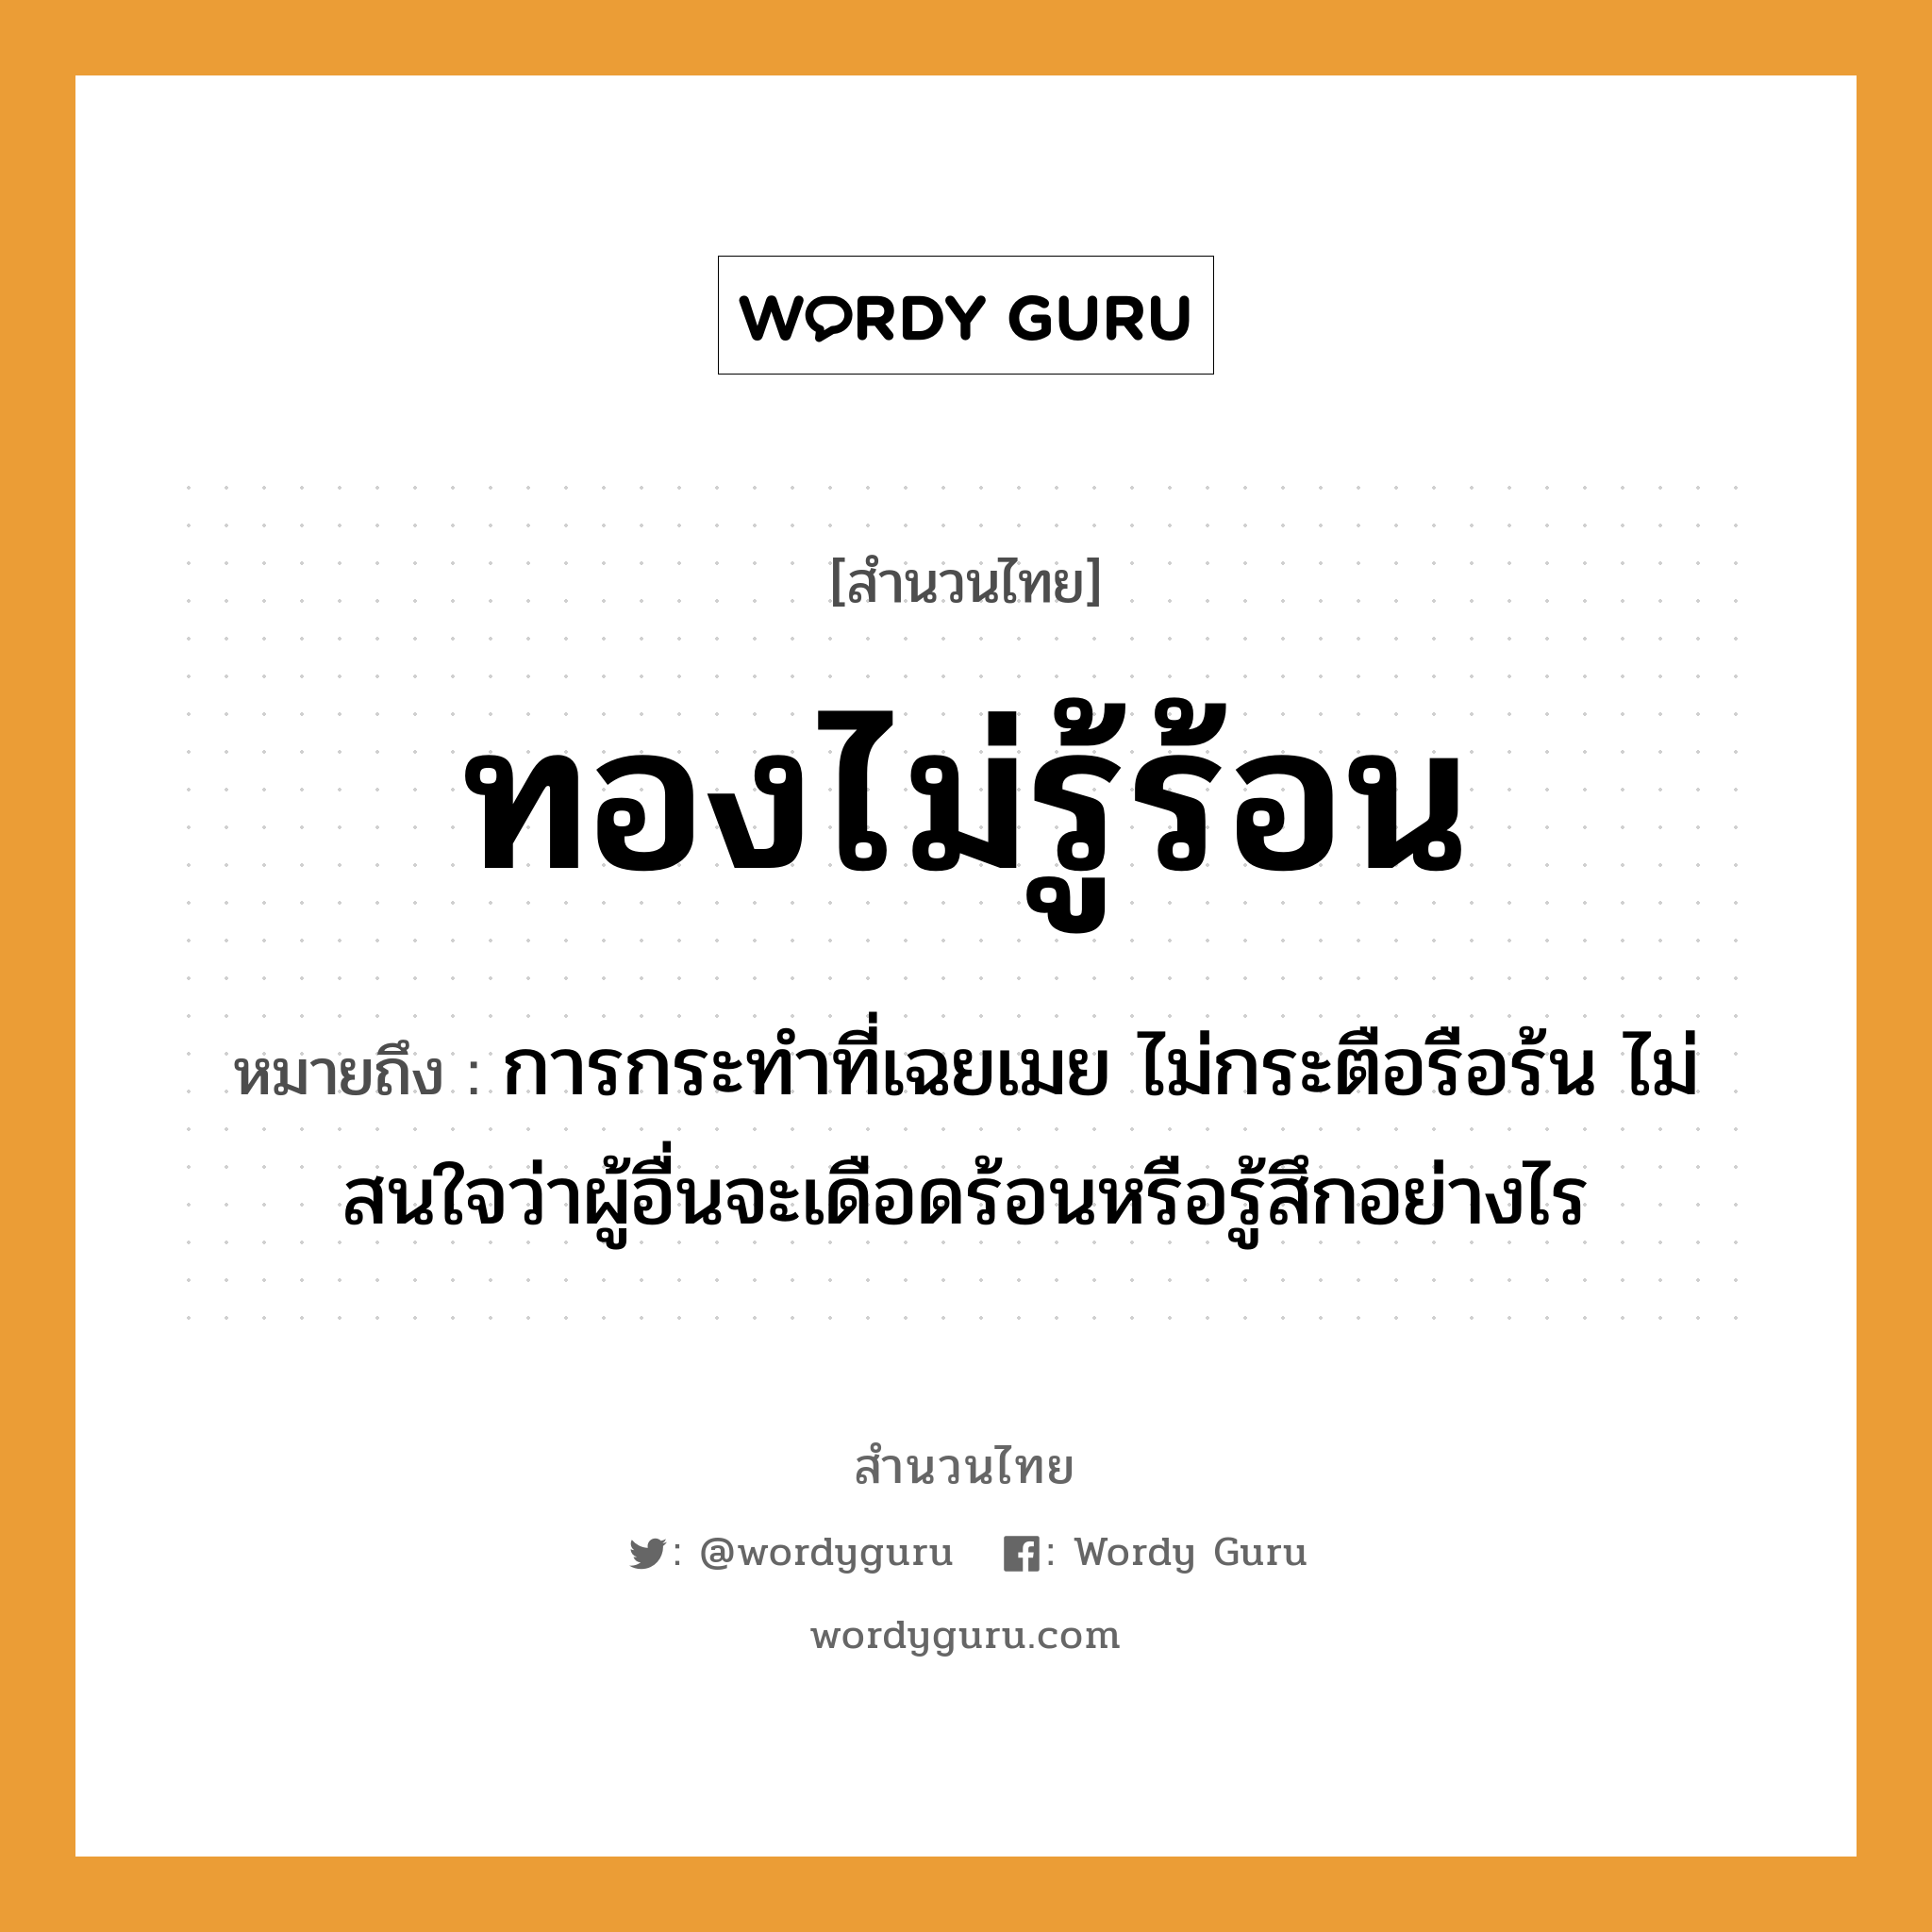 สำนวนไทย: ทองไม่รู้ร้อน หมายถึง?, หมายถึง การกระทำที่เฉยเมย ไม่กระตือรือร้น ไม่สนใจว่าผู้อื่นจะเดือดร้อนหรือรู้สึกอย่างไร